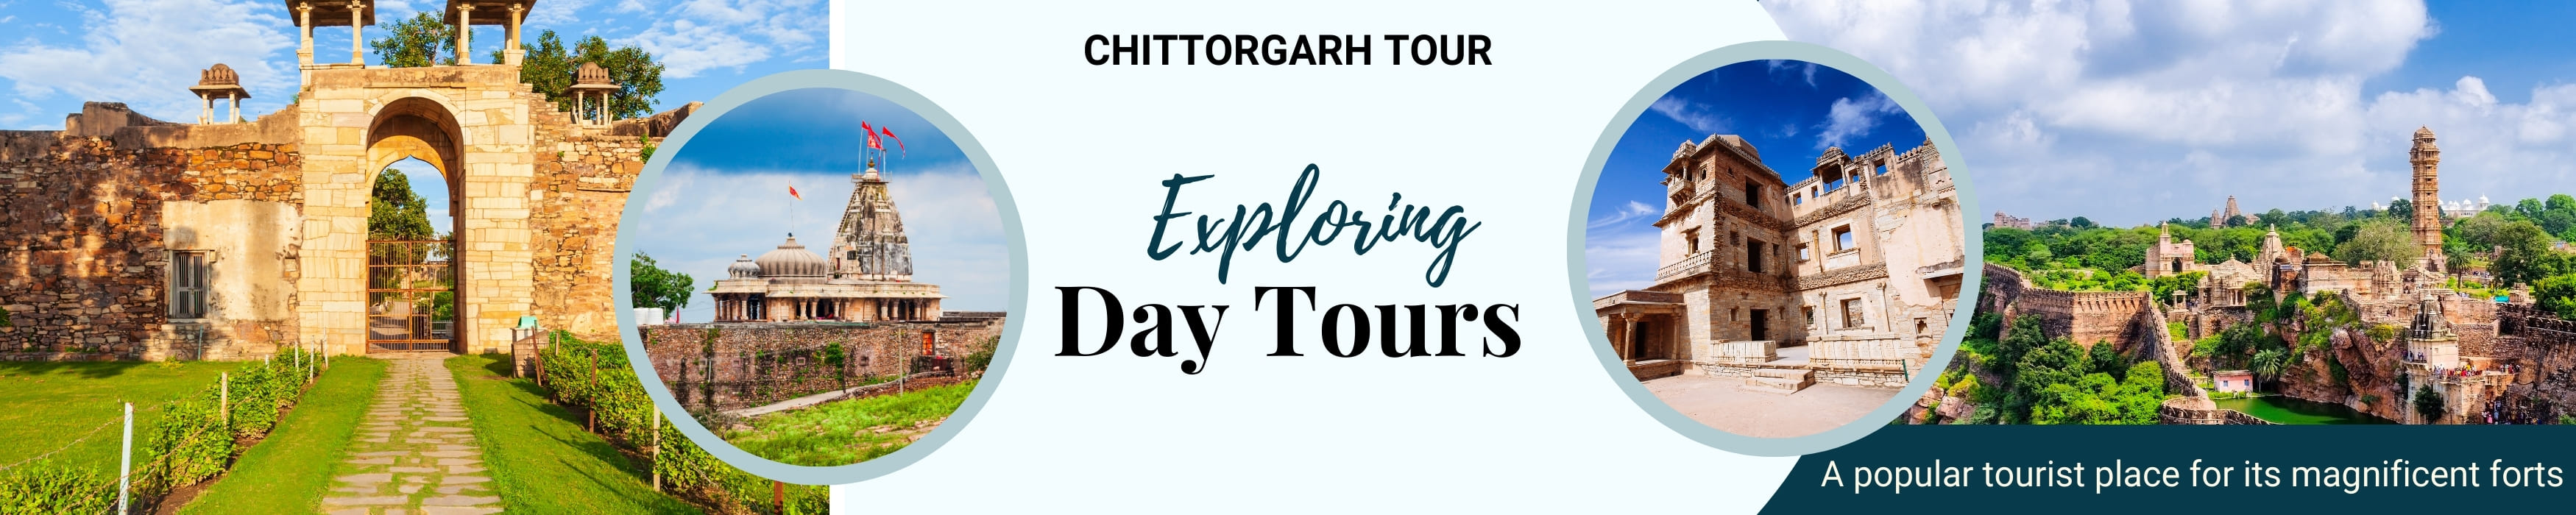 Chittorgarh Tour